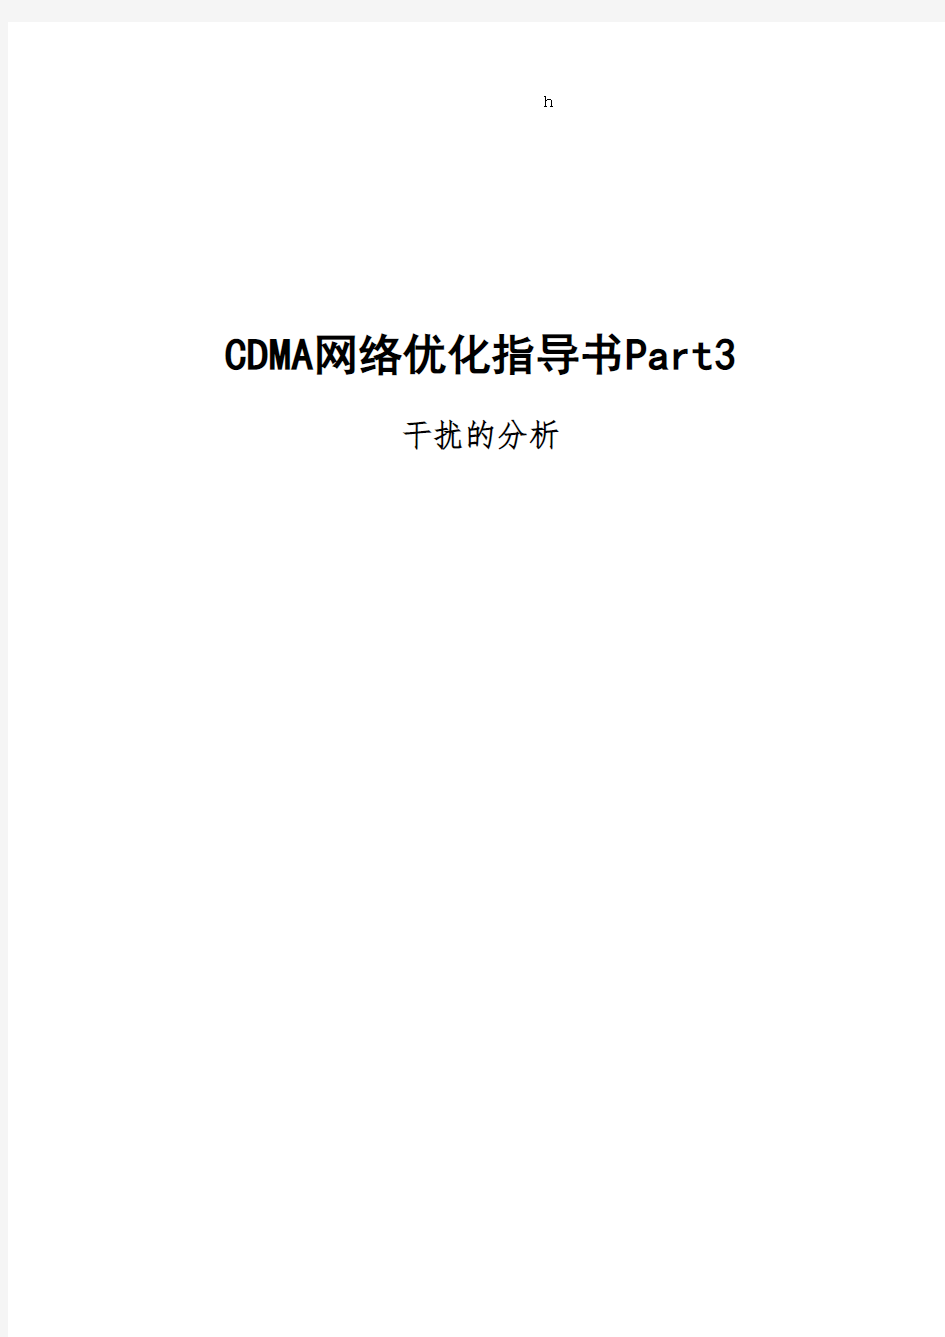 CDMA网络优化指导书Part3干扰的分析